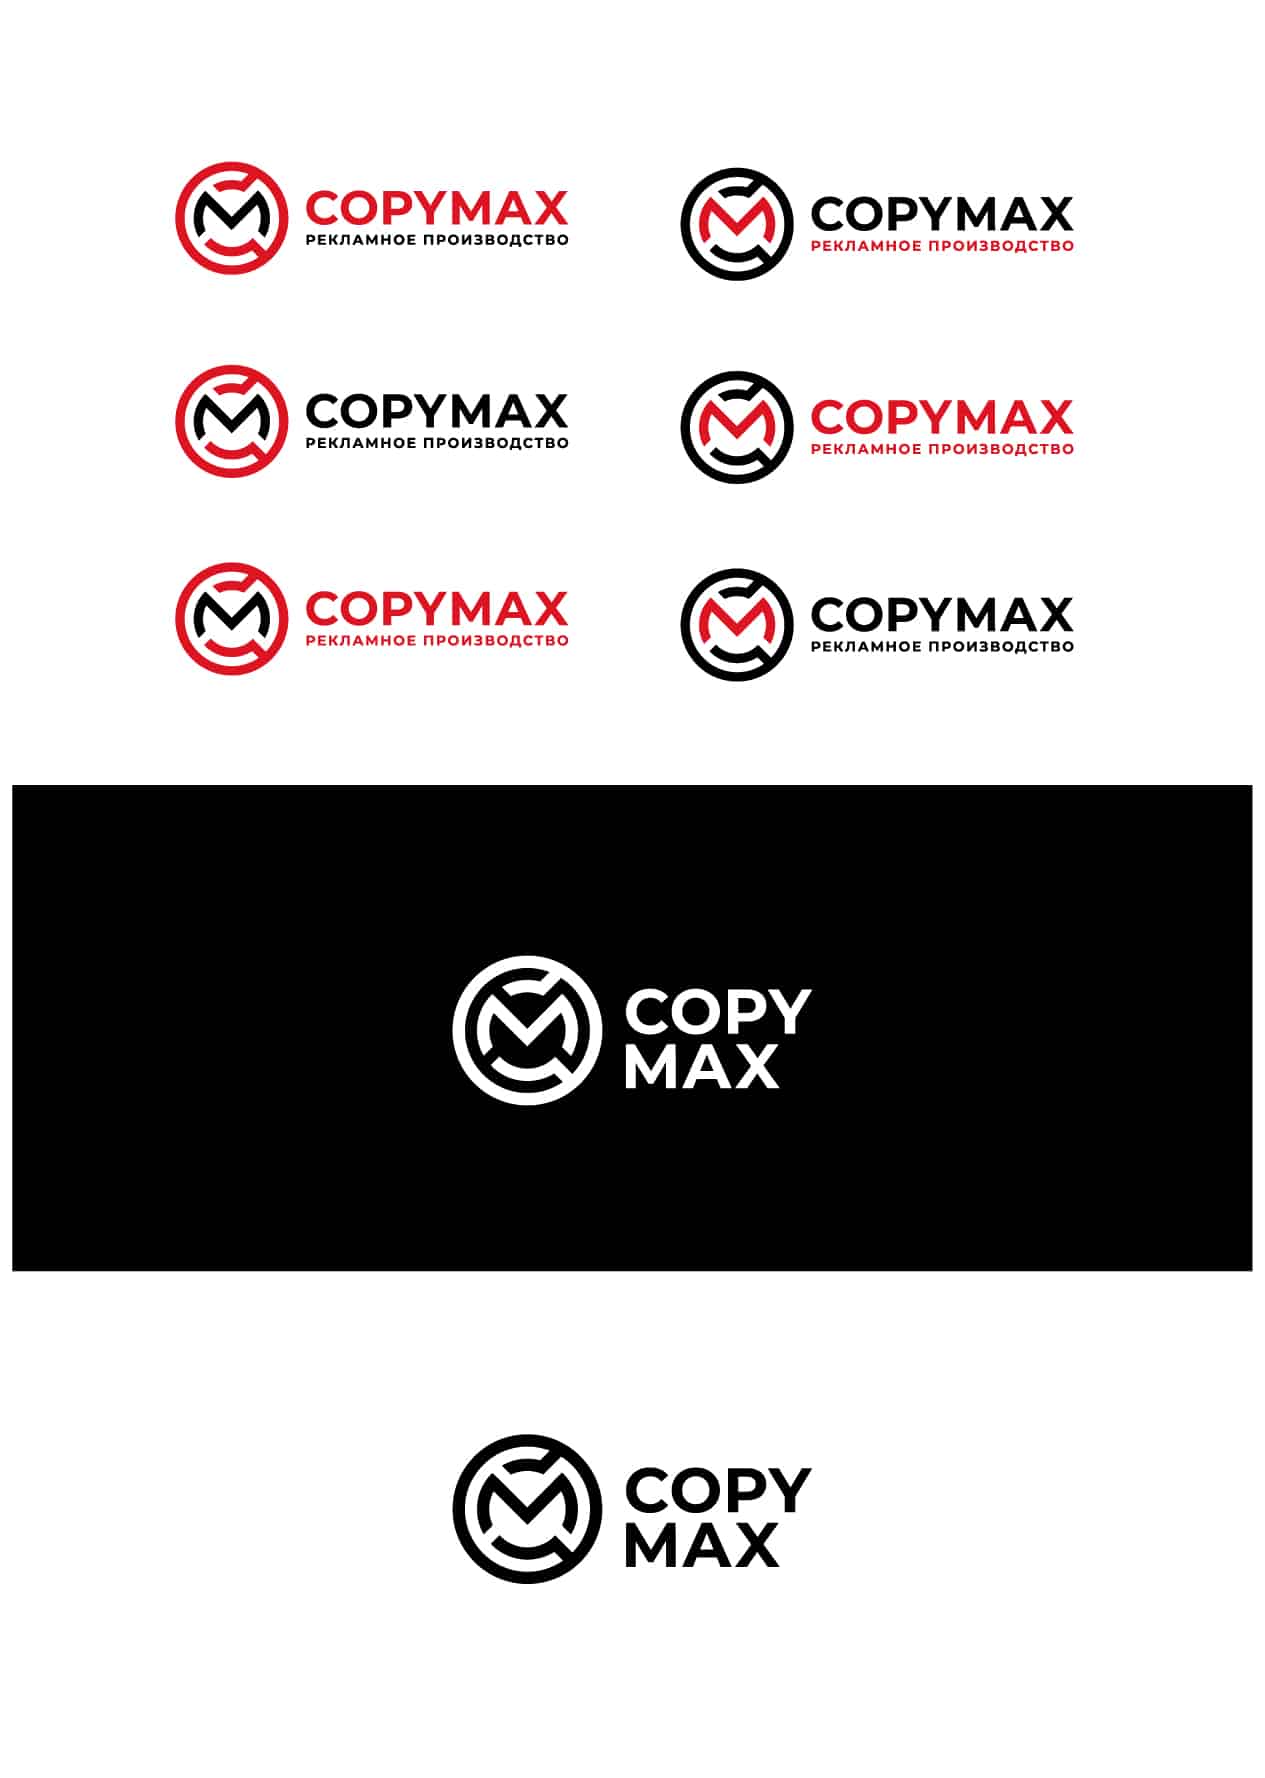 Пример Разработки Логотипа